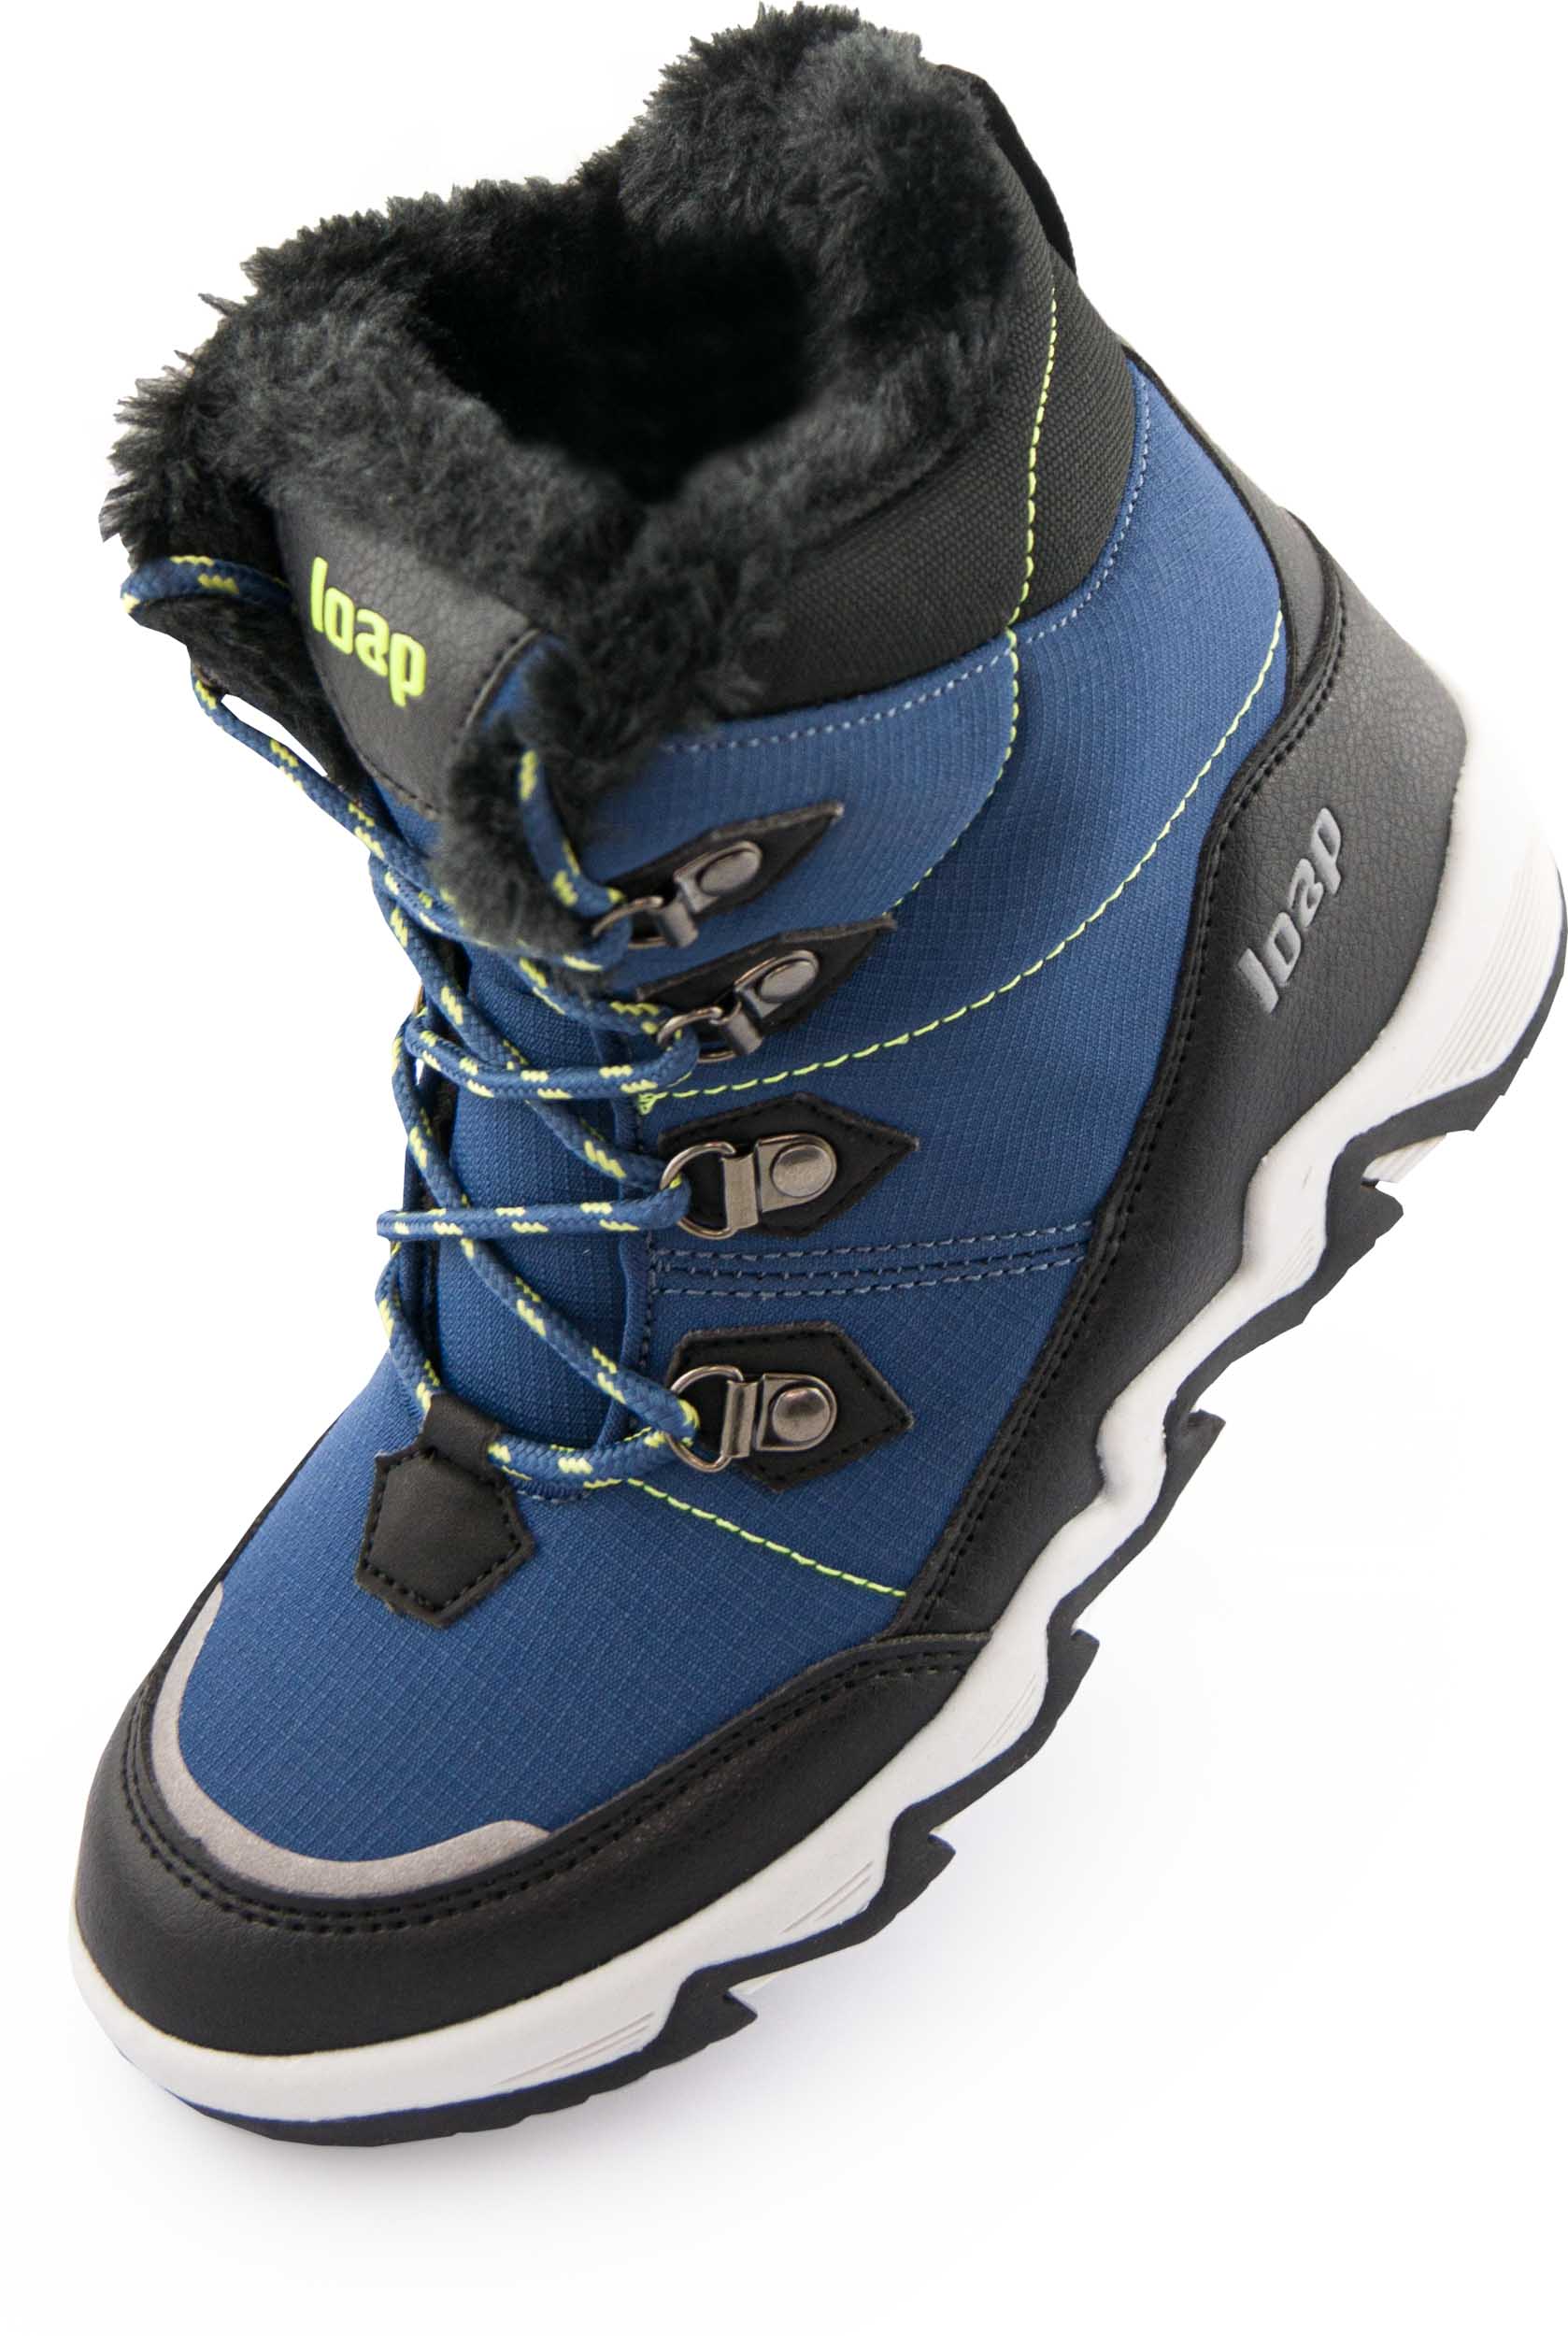 Dětské zimní boty LOAP LIMA blue|31